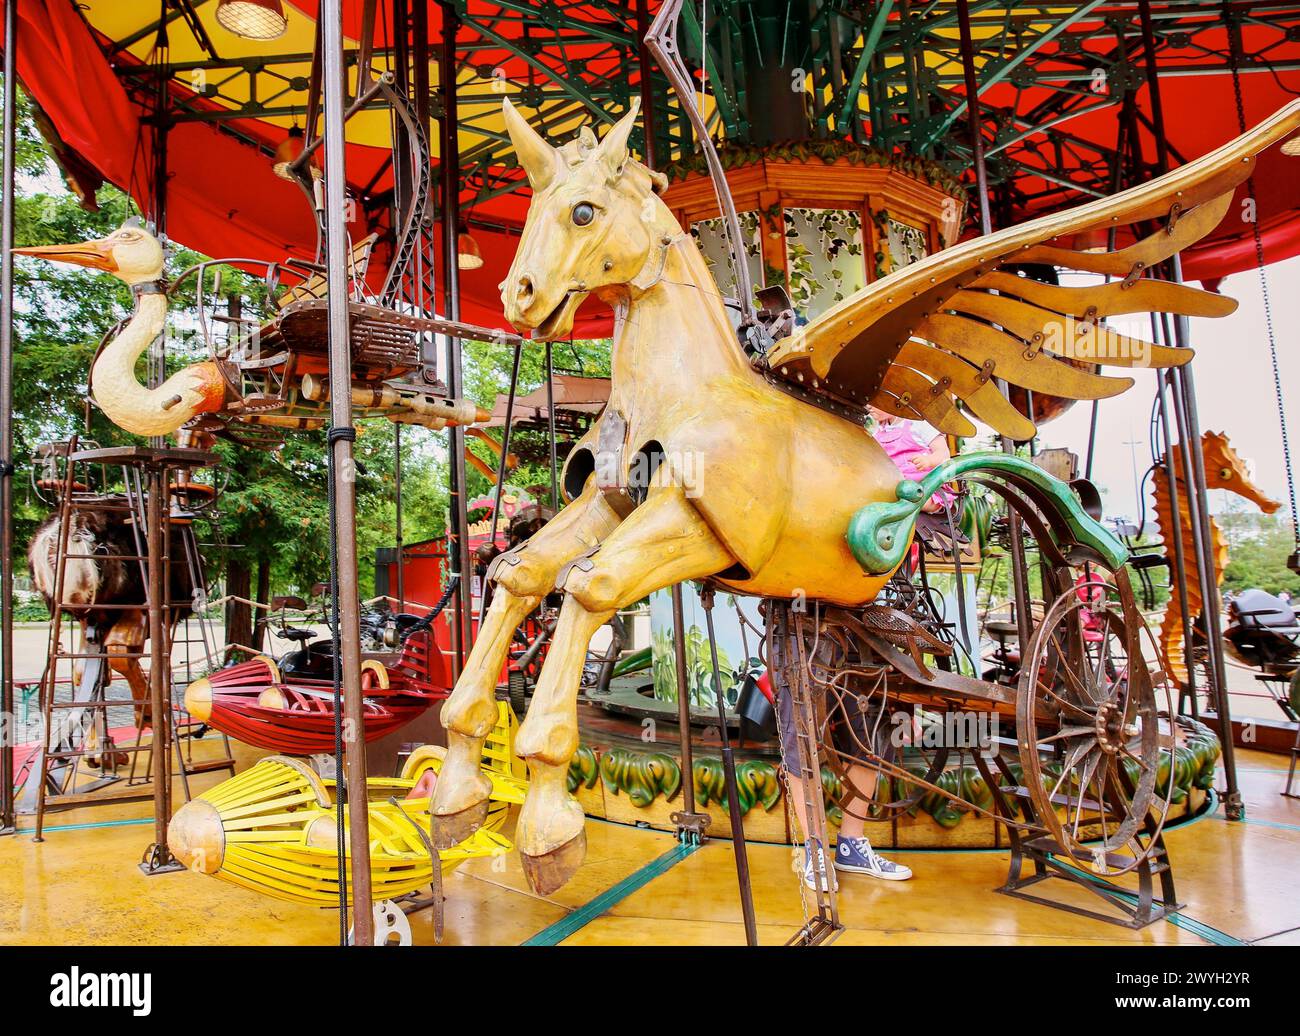 Carrousel, Les Machines de LIle, Nantes, Pays de la Loire, France. Stock Photo